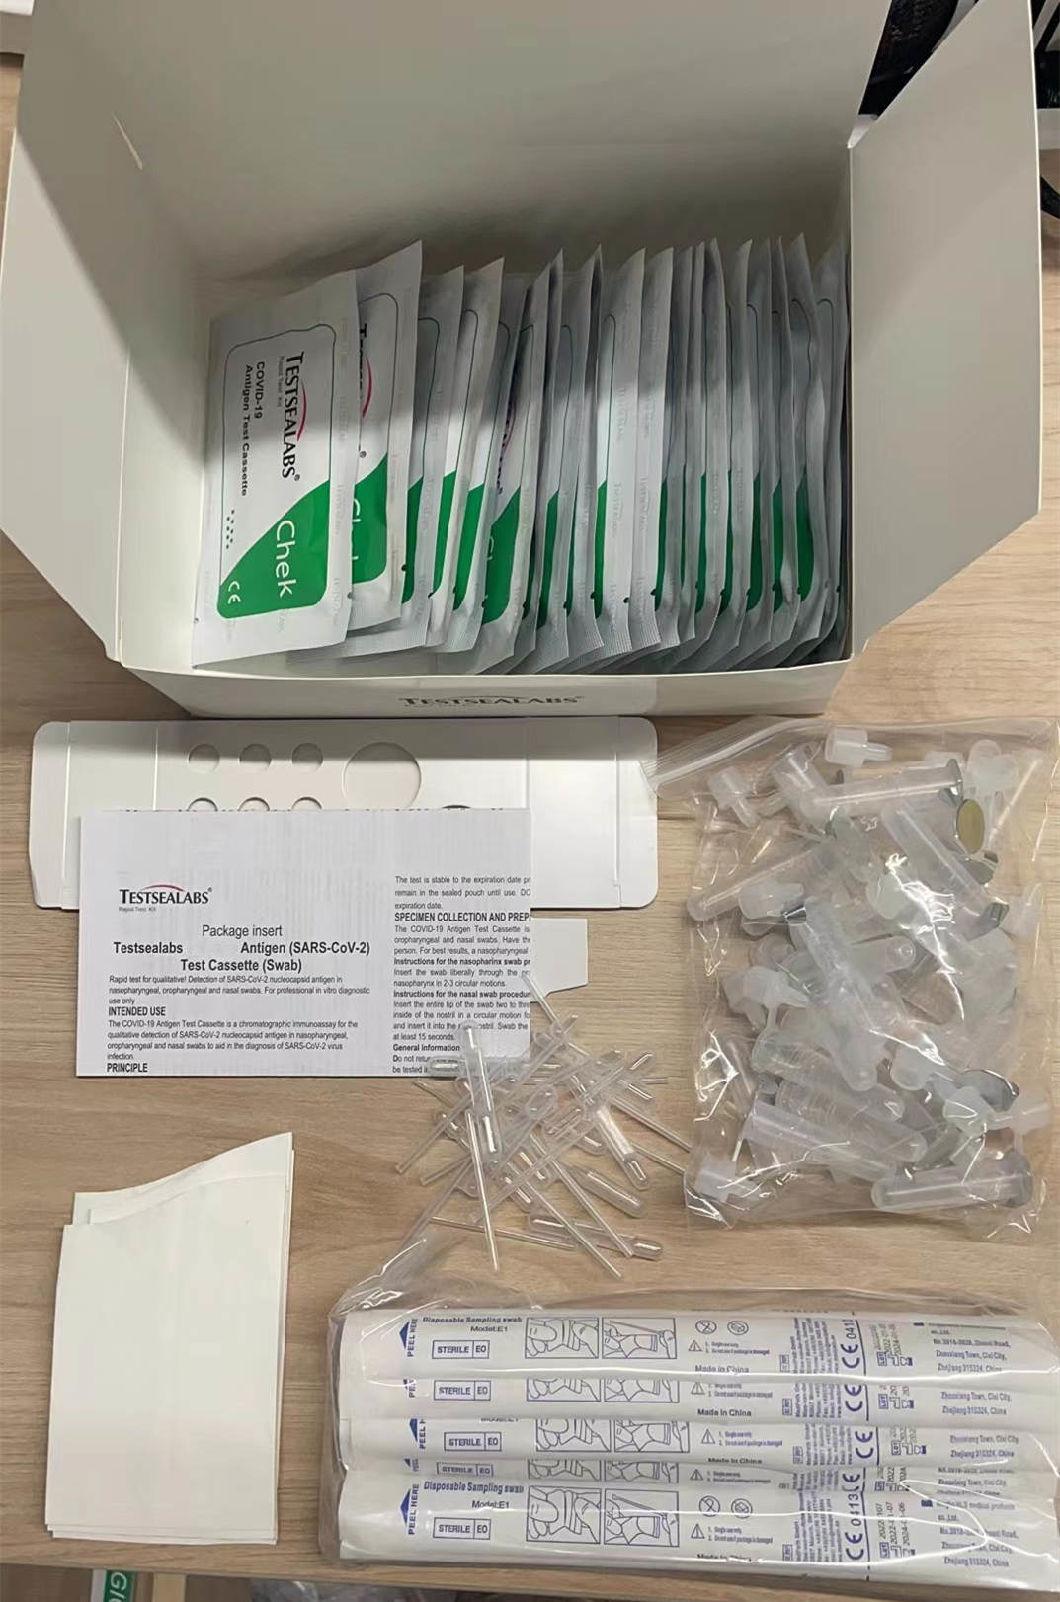 Medical Antigen Rapid Diagnostic Test Cassette 19 Virus